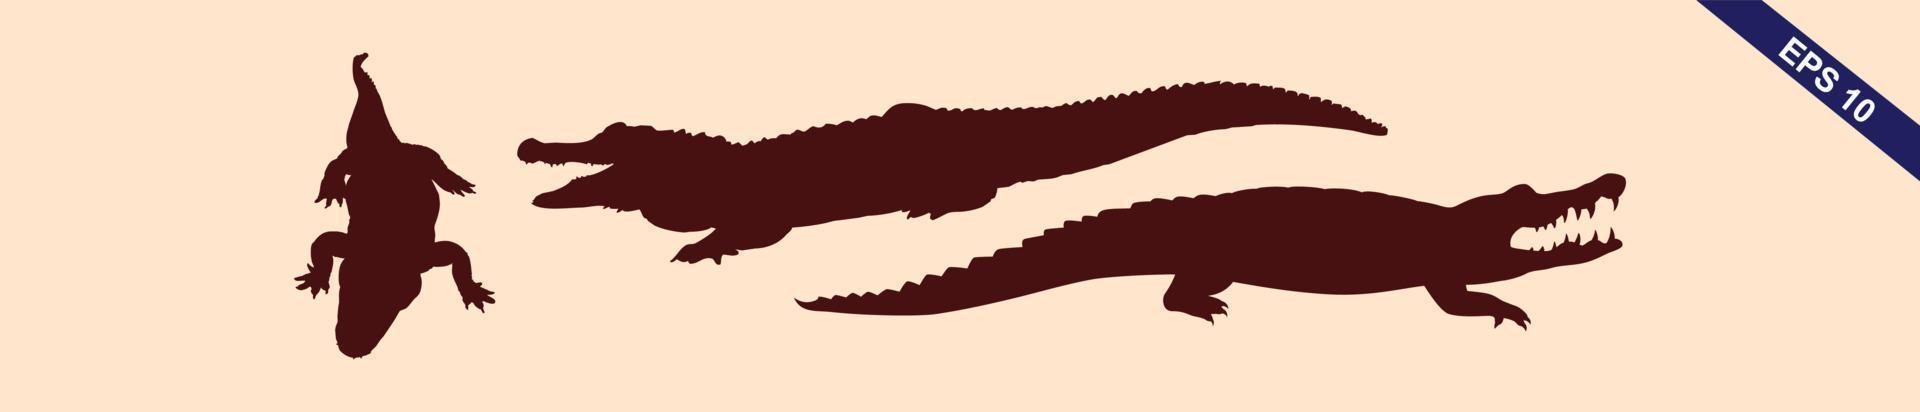 conjunto de silueta de cocodrilo y caimán vector